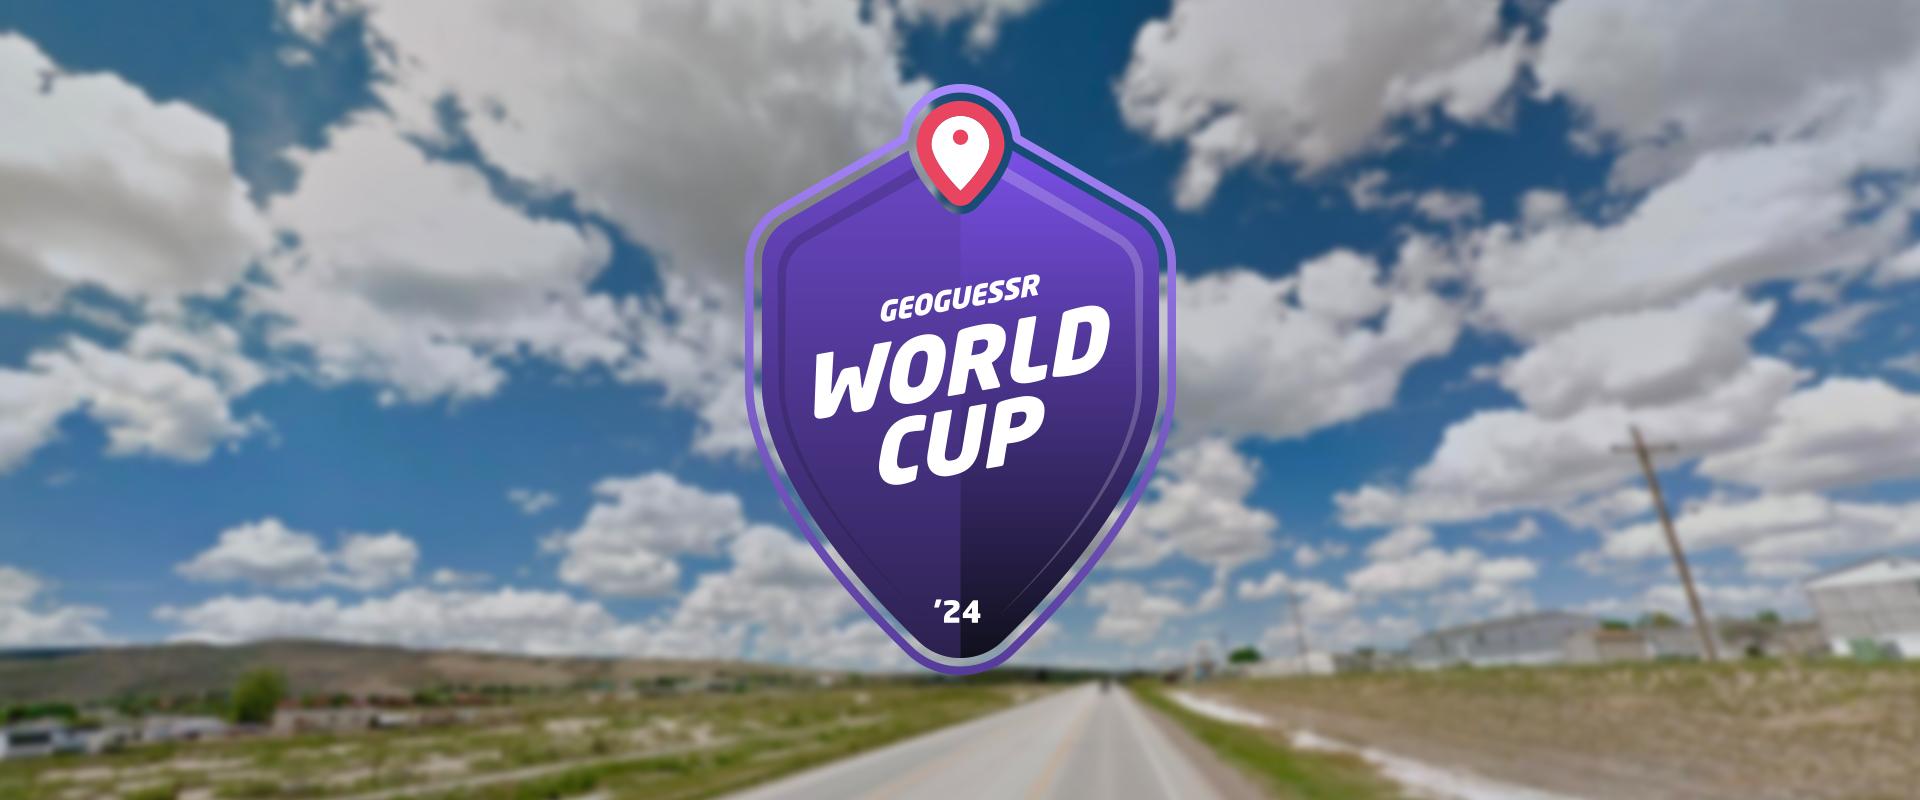 Két magyar is kijuthat a GeoGuessr-világbajnokságra hétvégén